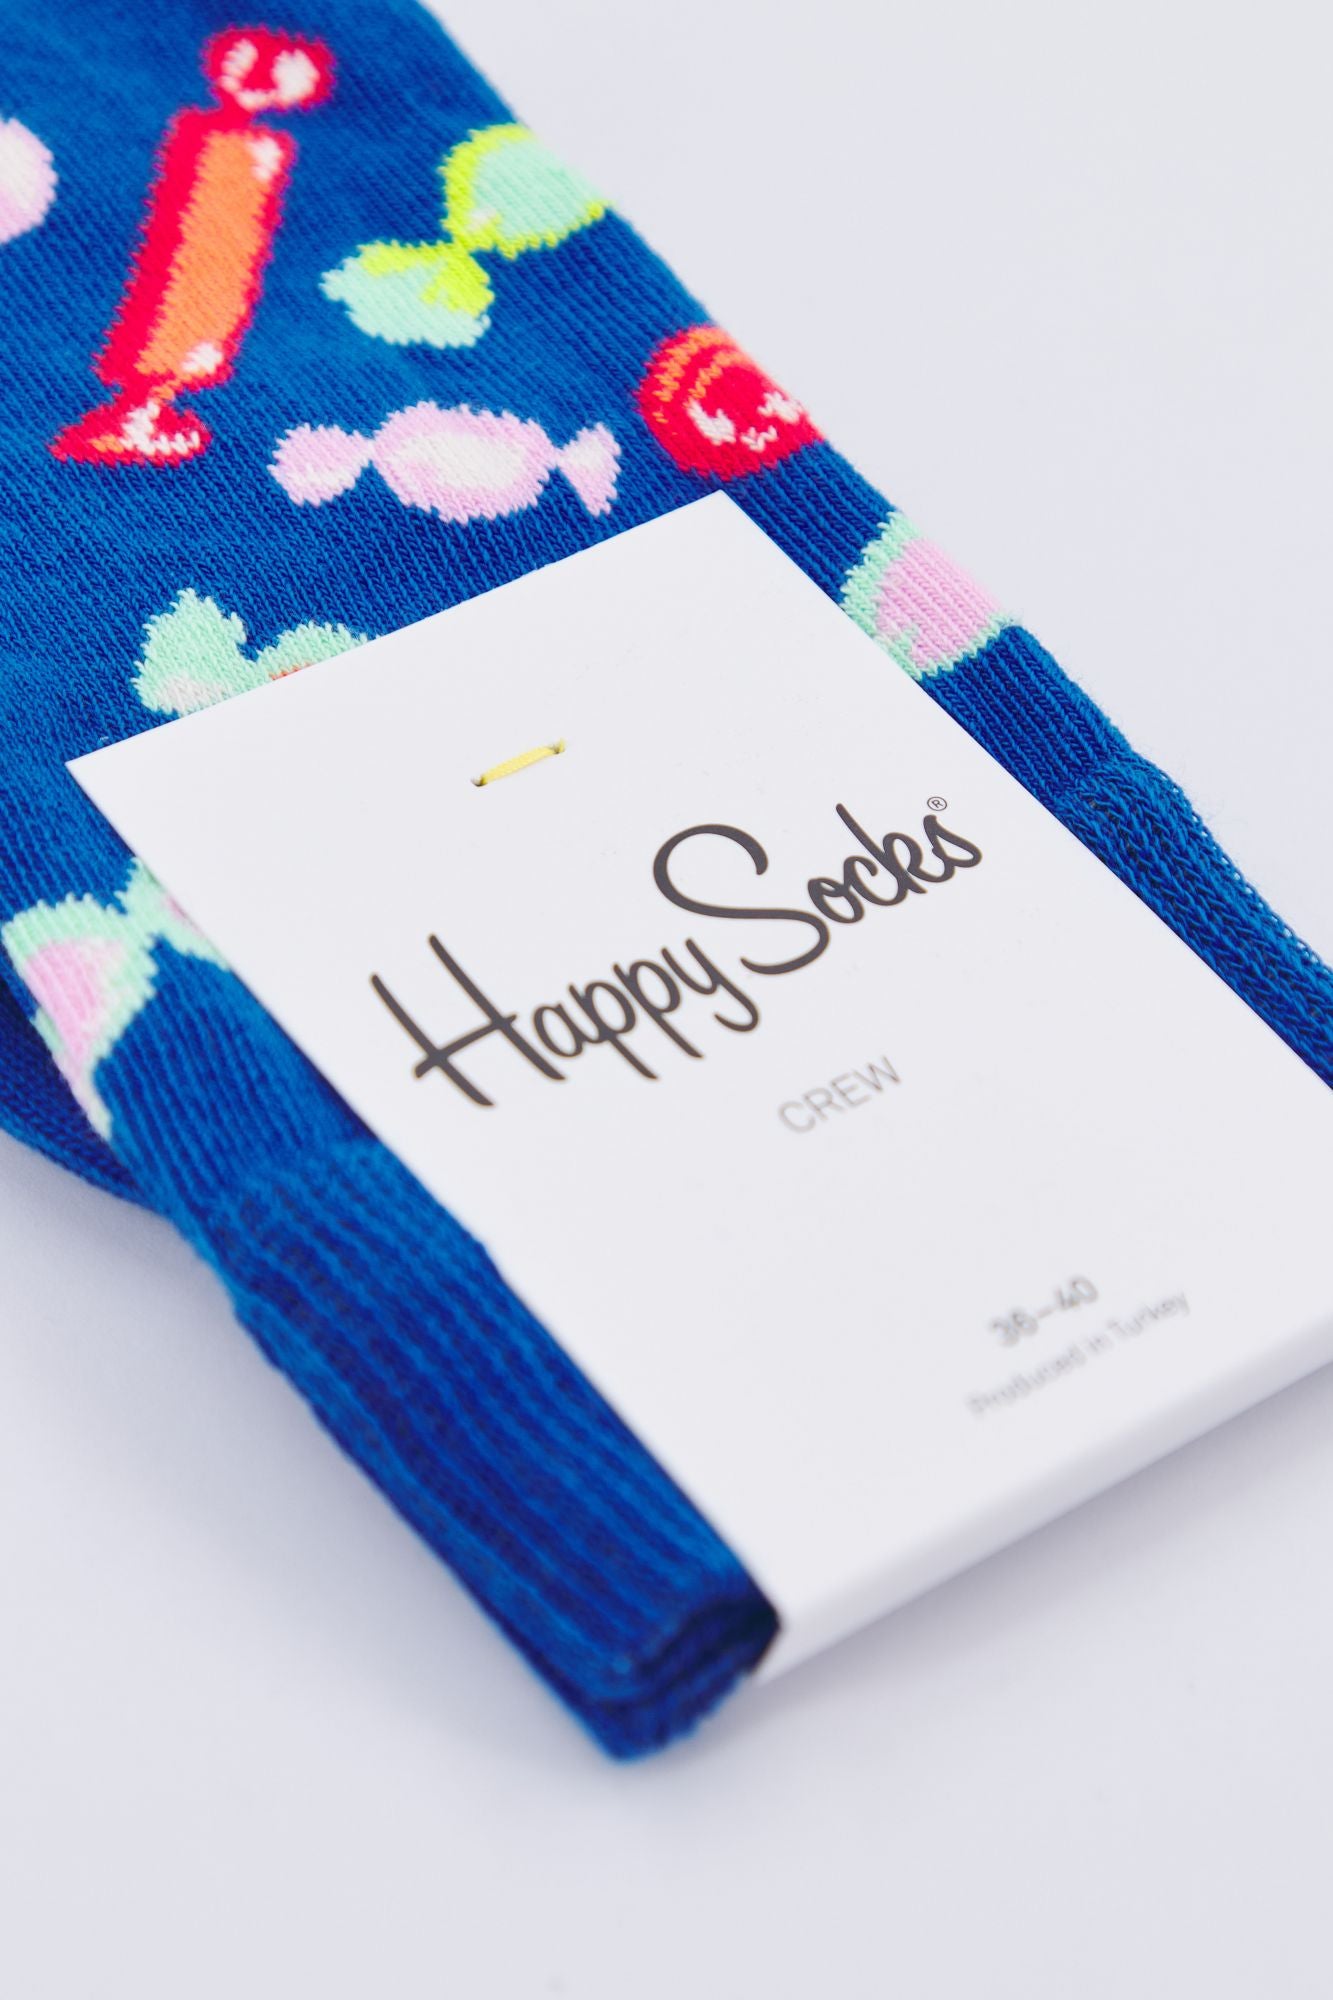 HAPPY SOCKS CAN01 6300 en color AZUL (3)